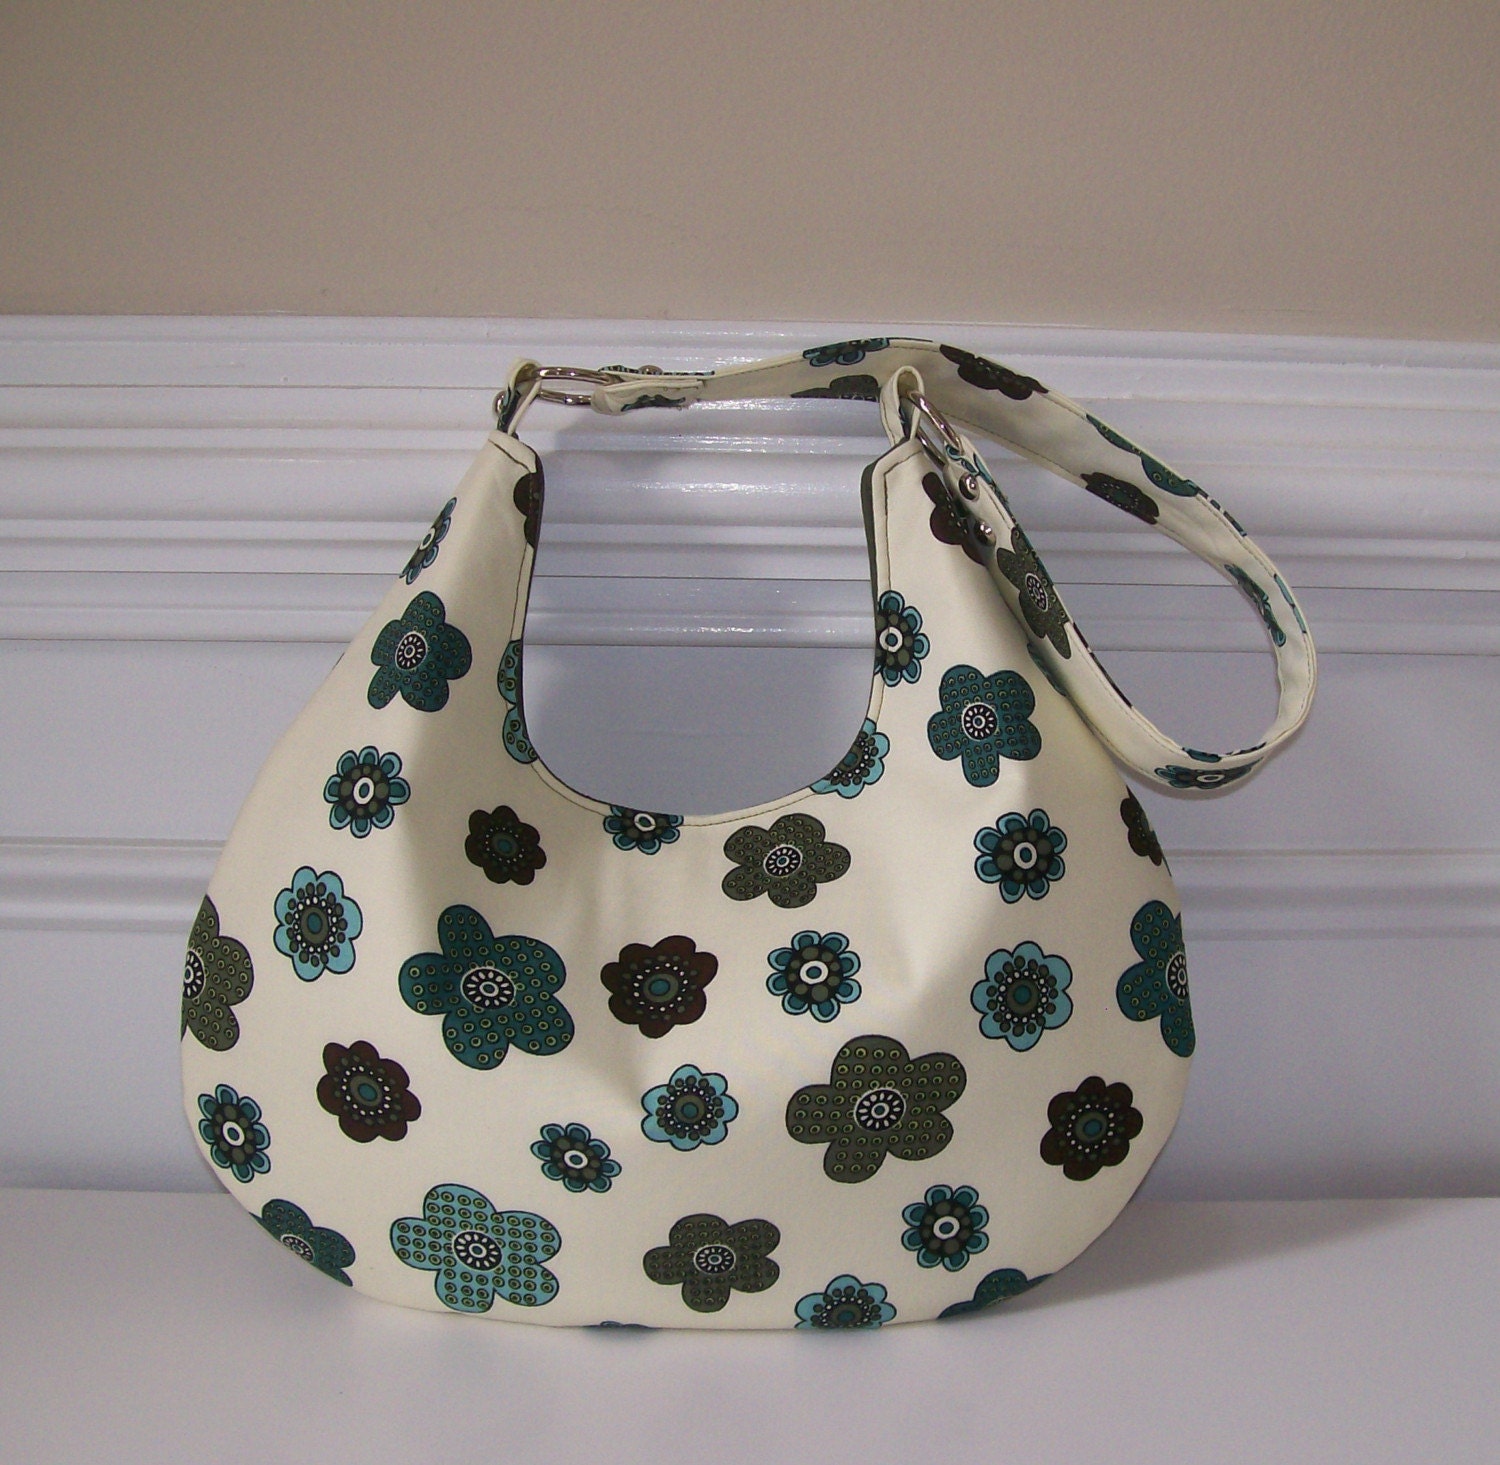 free gathered hobo bag sewing pattern